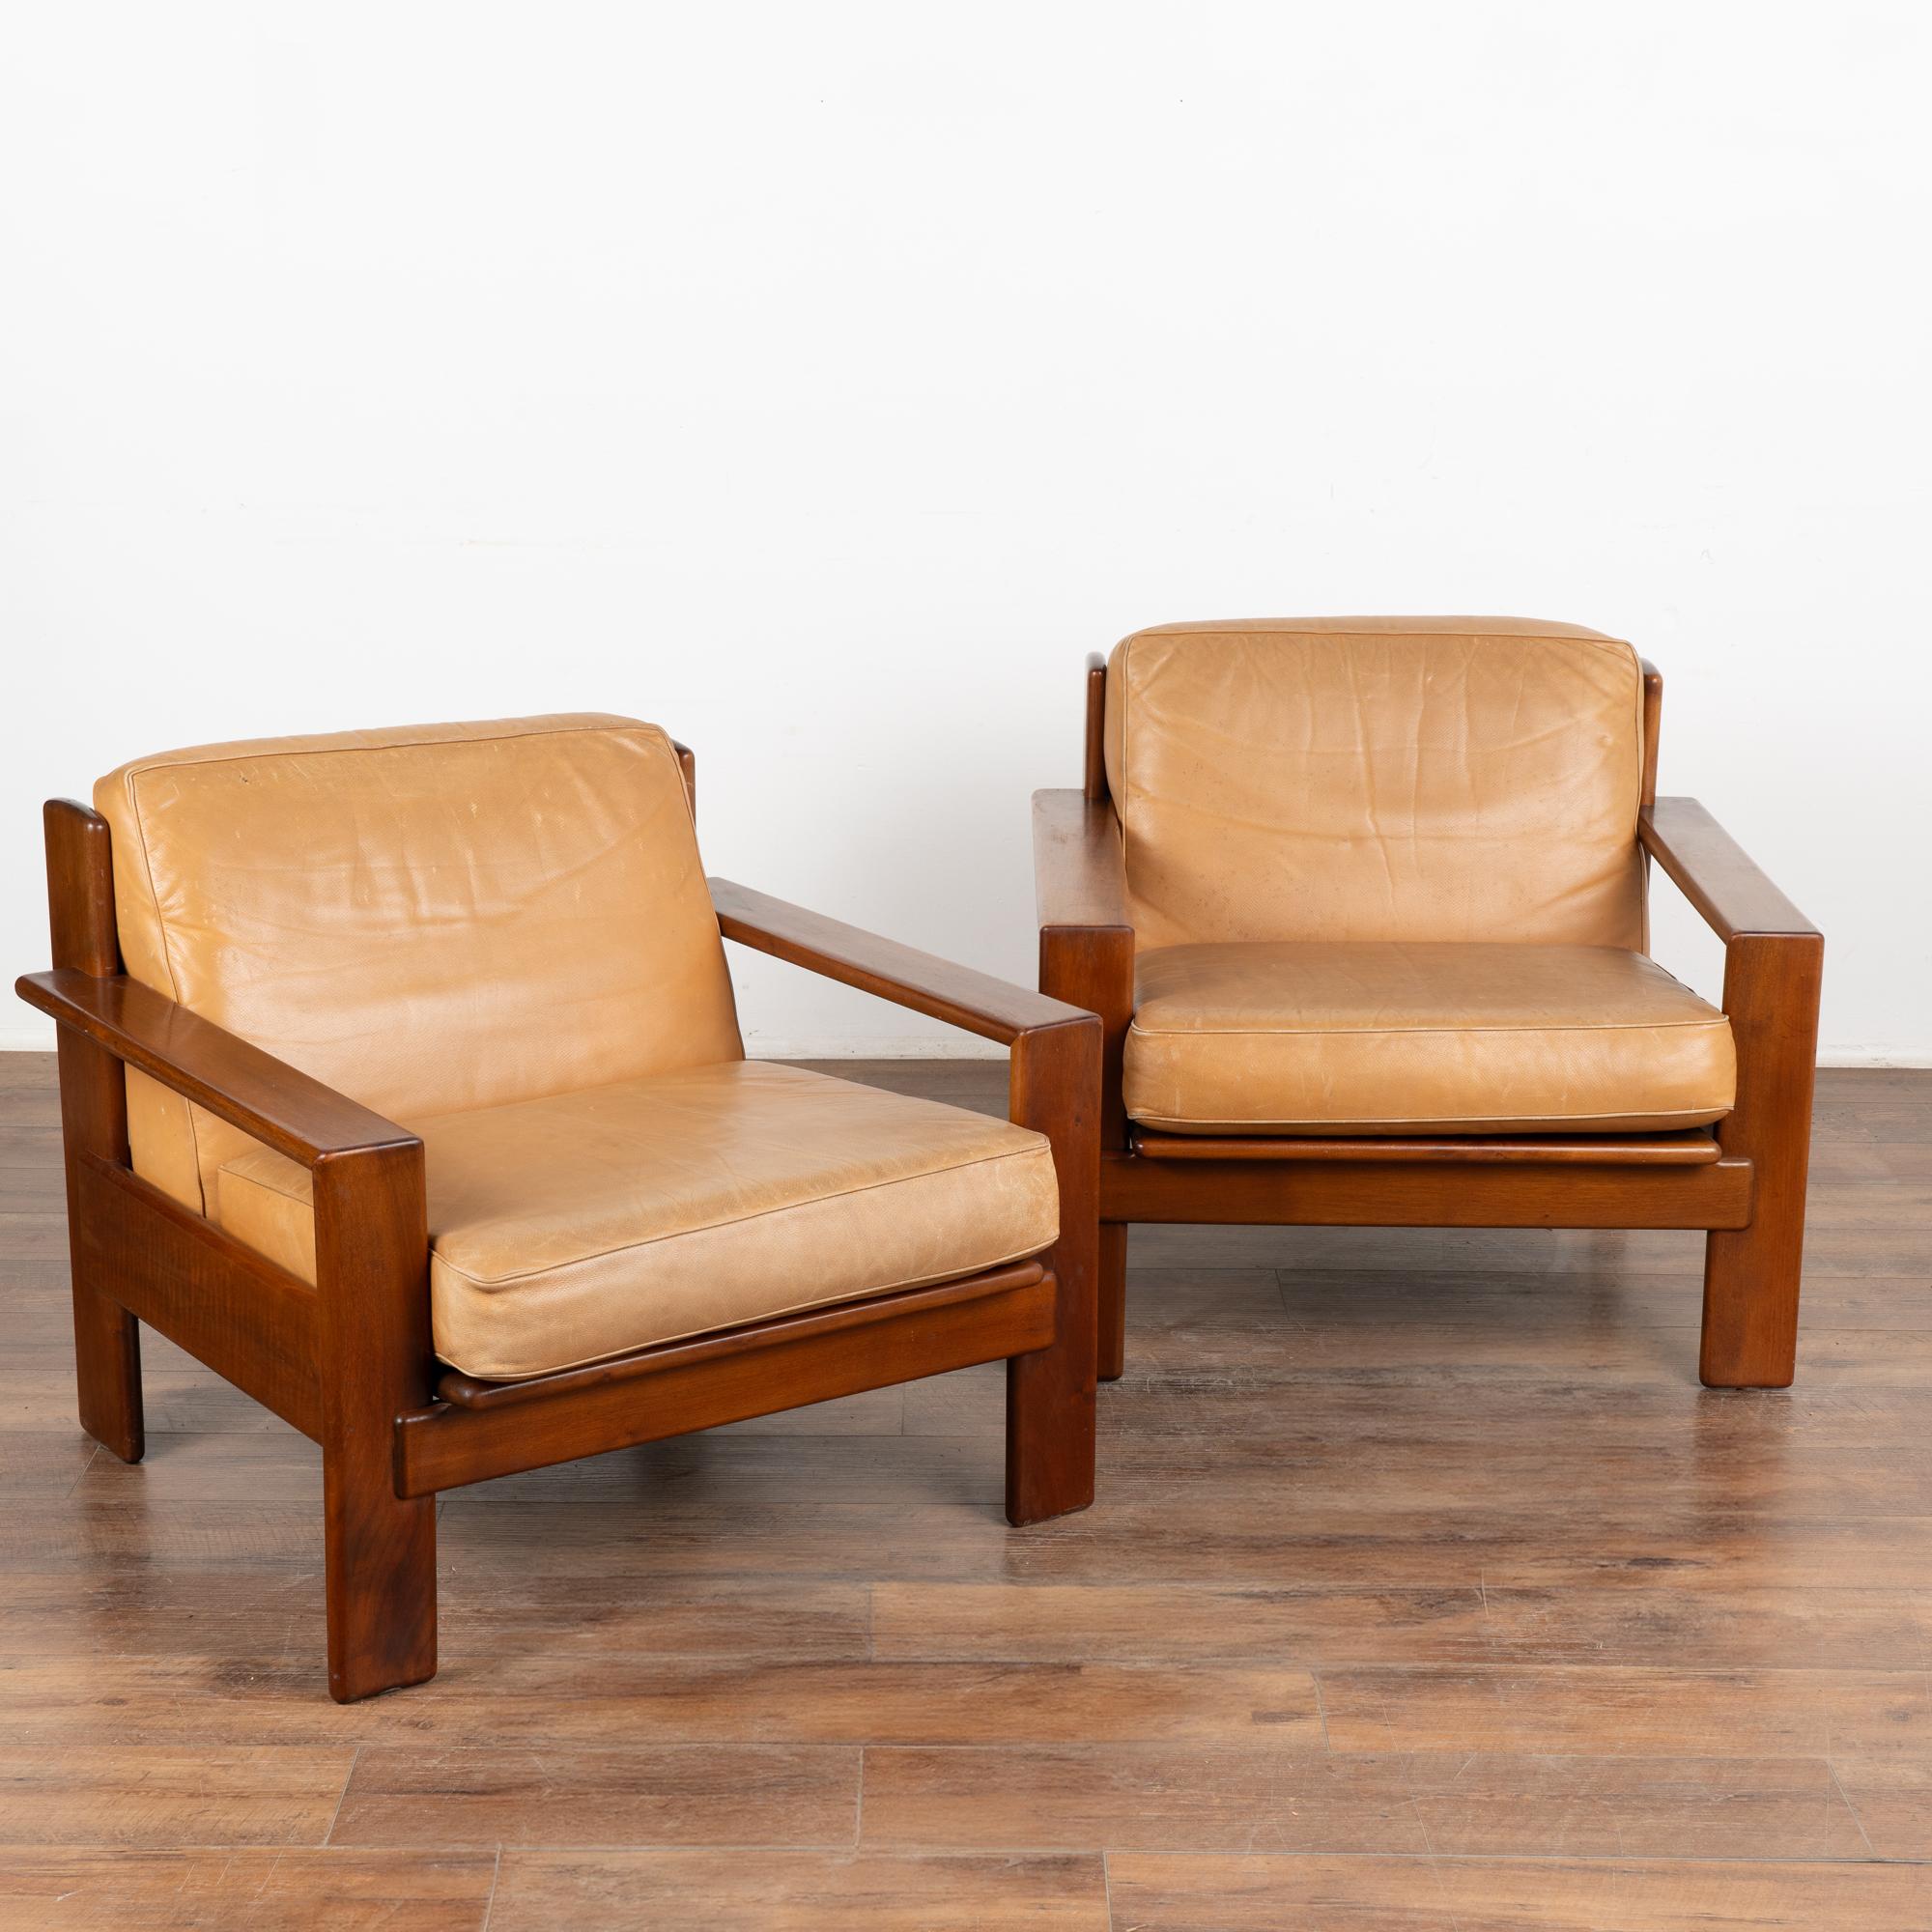 Dieses Paar Sessel zeigt die klaren Linien der Handwerkskunst und des Stils der Jahrhundertmitte. 
Das Original-Kamel-Leder befindet sich in einem guten gebrauchten Zustand und weist typische altersbedingte Gebrauchsspuren wie Schrammen, Kratzer,